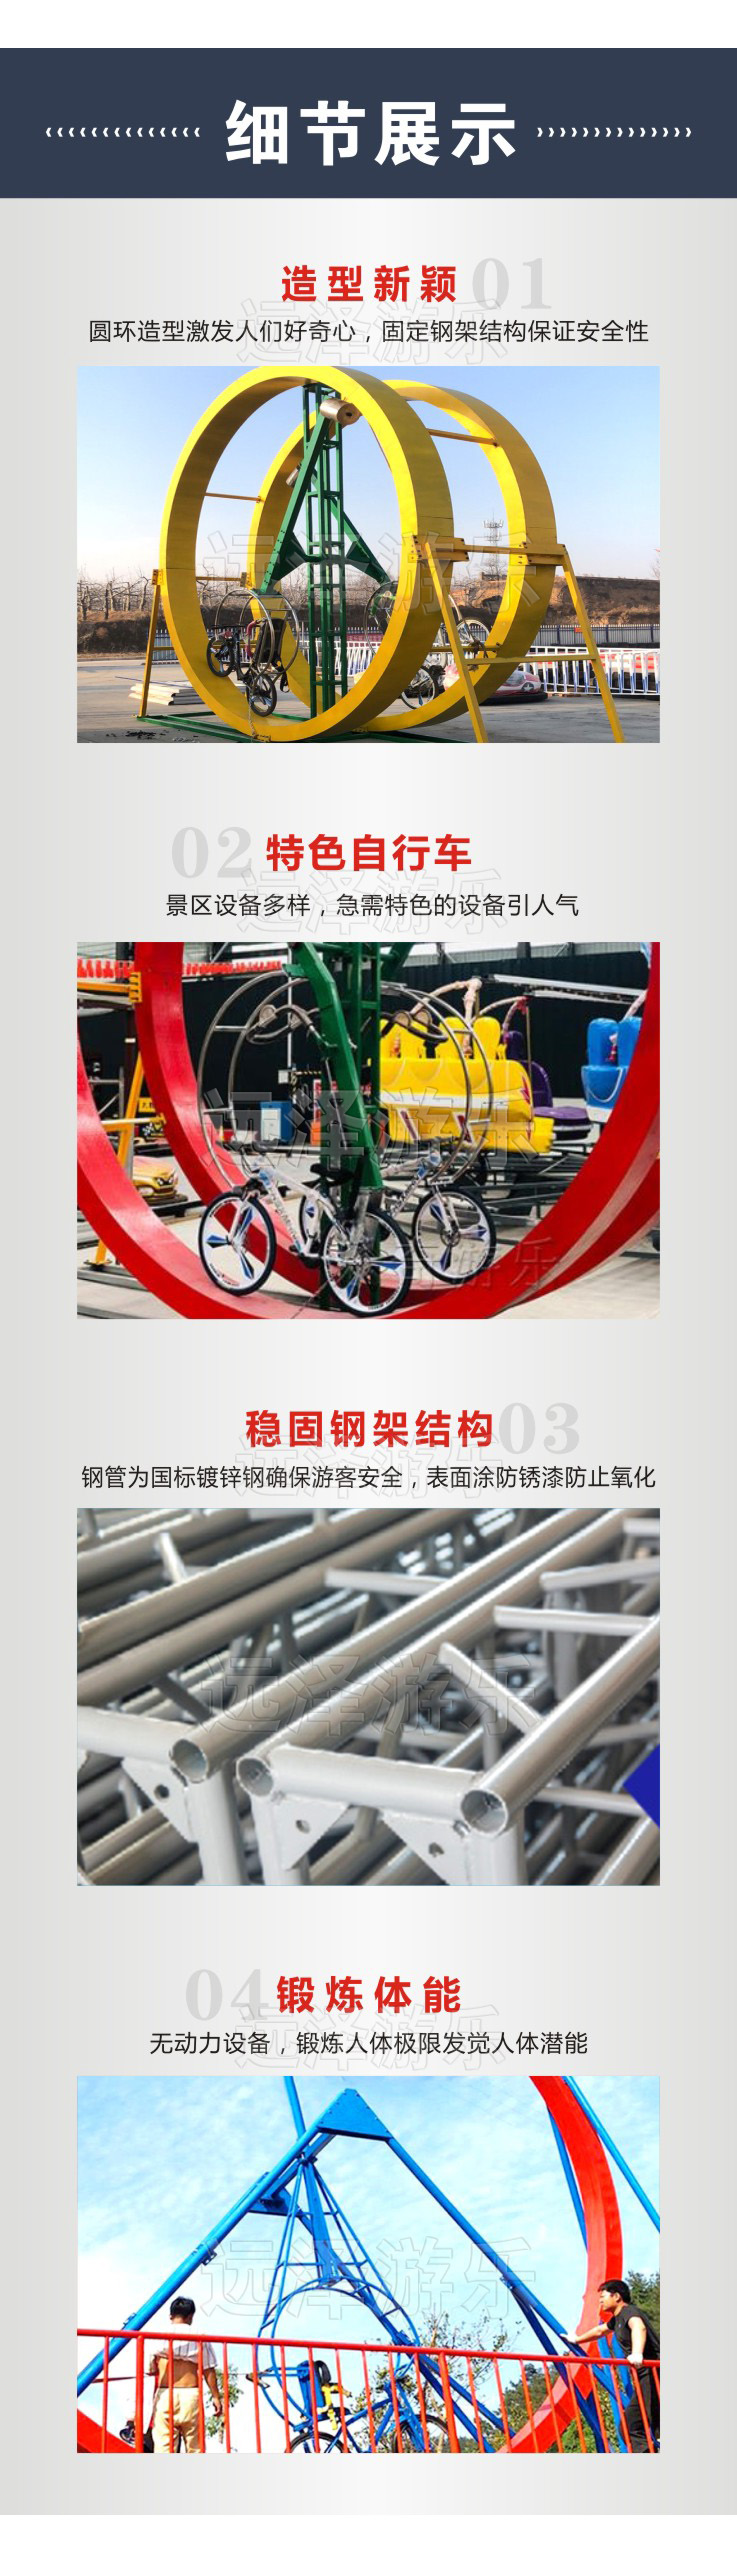 沧州环形自行车 2021网红自行车 无动力圆环骑行单车 6